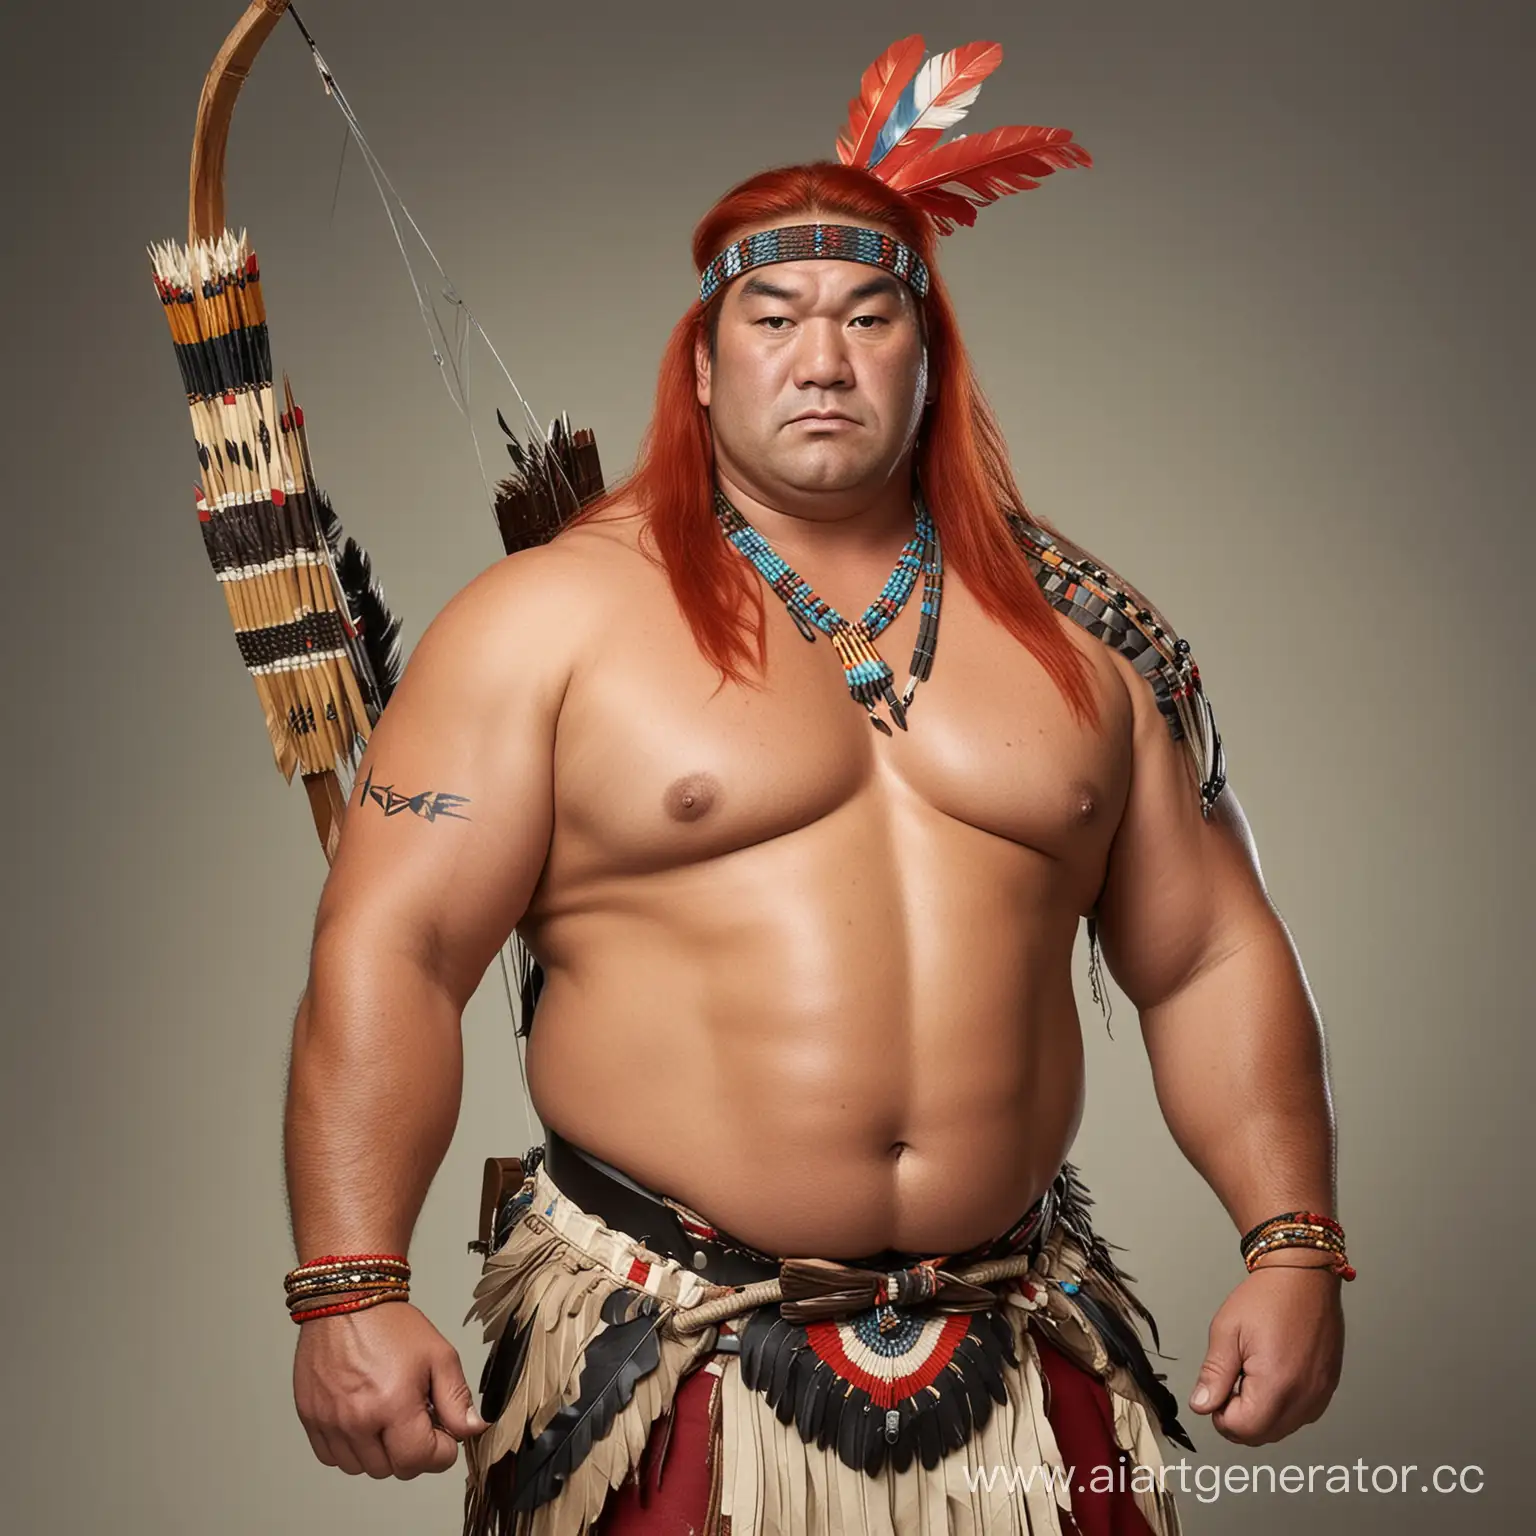 борец сумо с рыжими длинными волосами одетый как краснокожий индеец с индейским луком и стрелой в руках